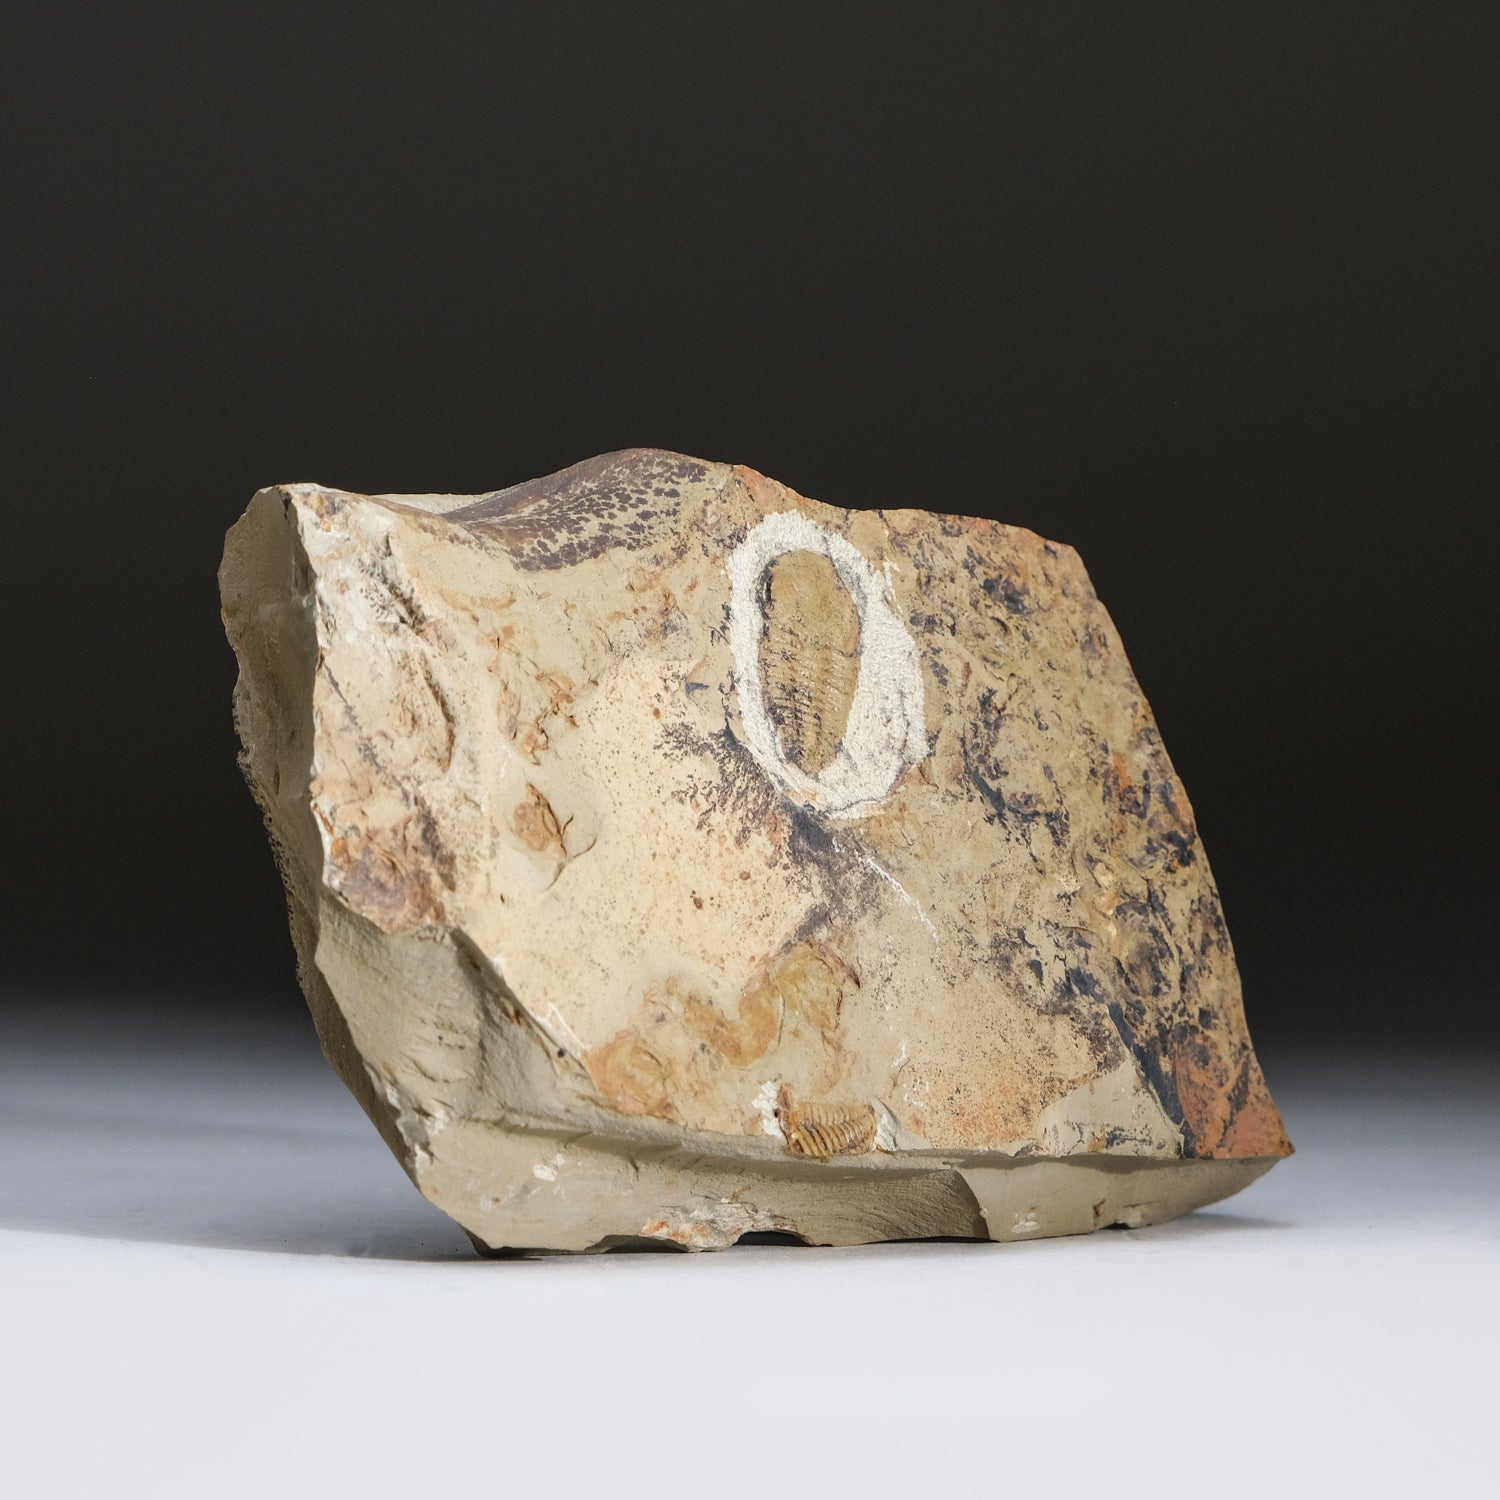 Genuine Trilobite (Ptychopariida) fossil on Matrix with acrylic display stand (1 lb)